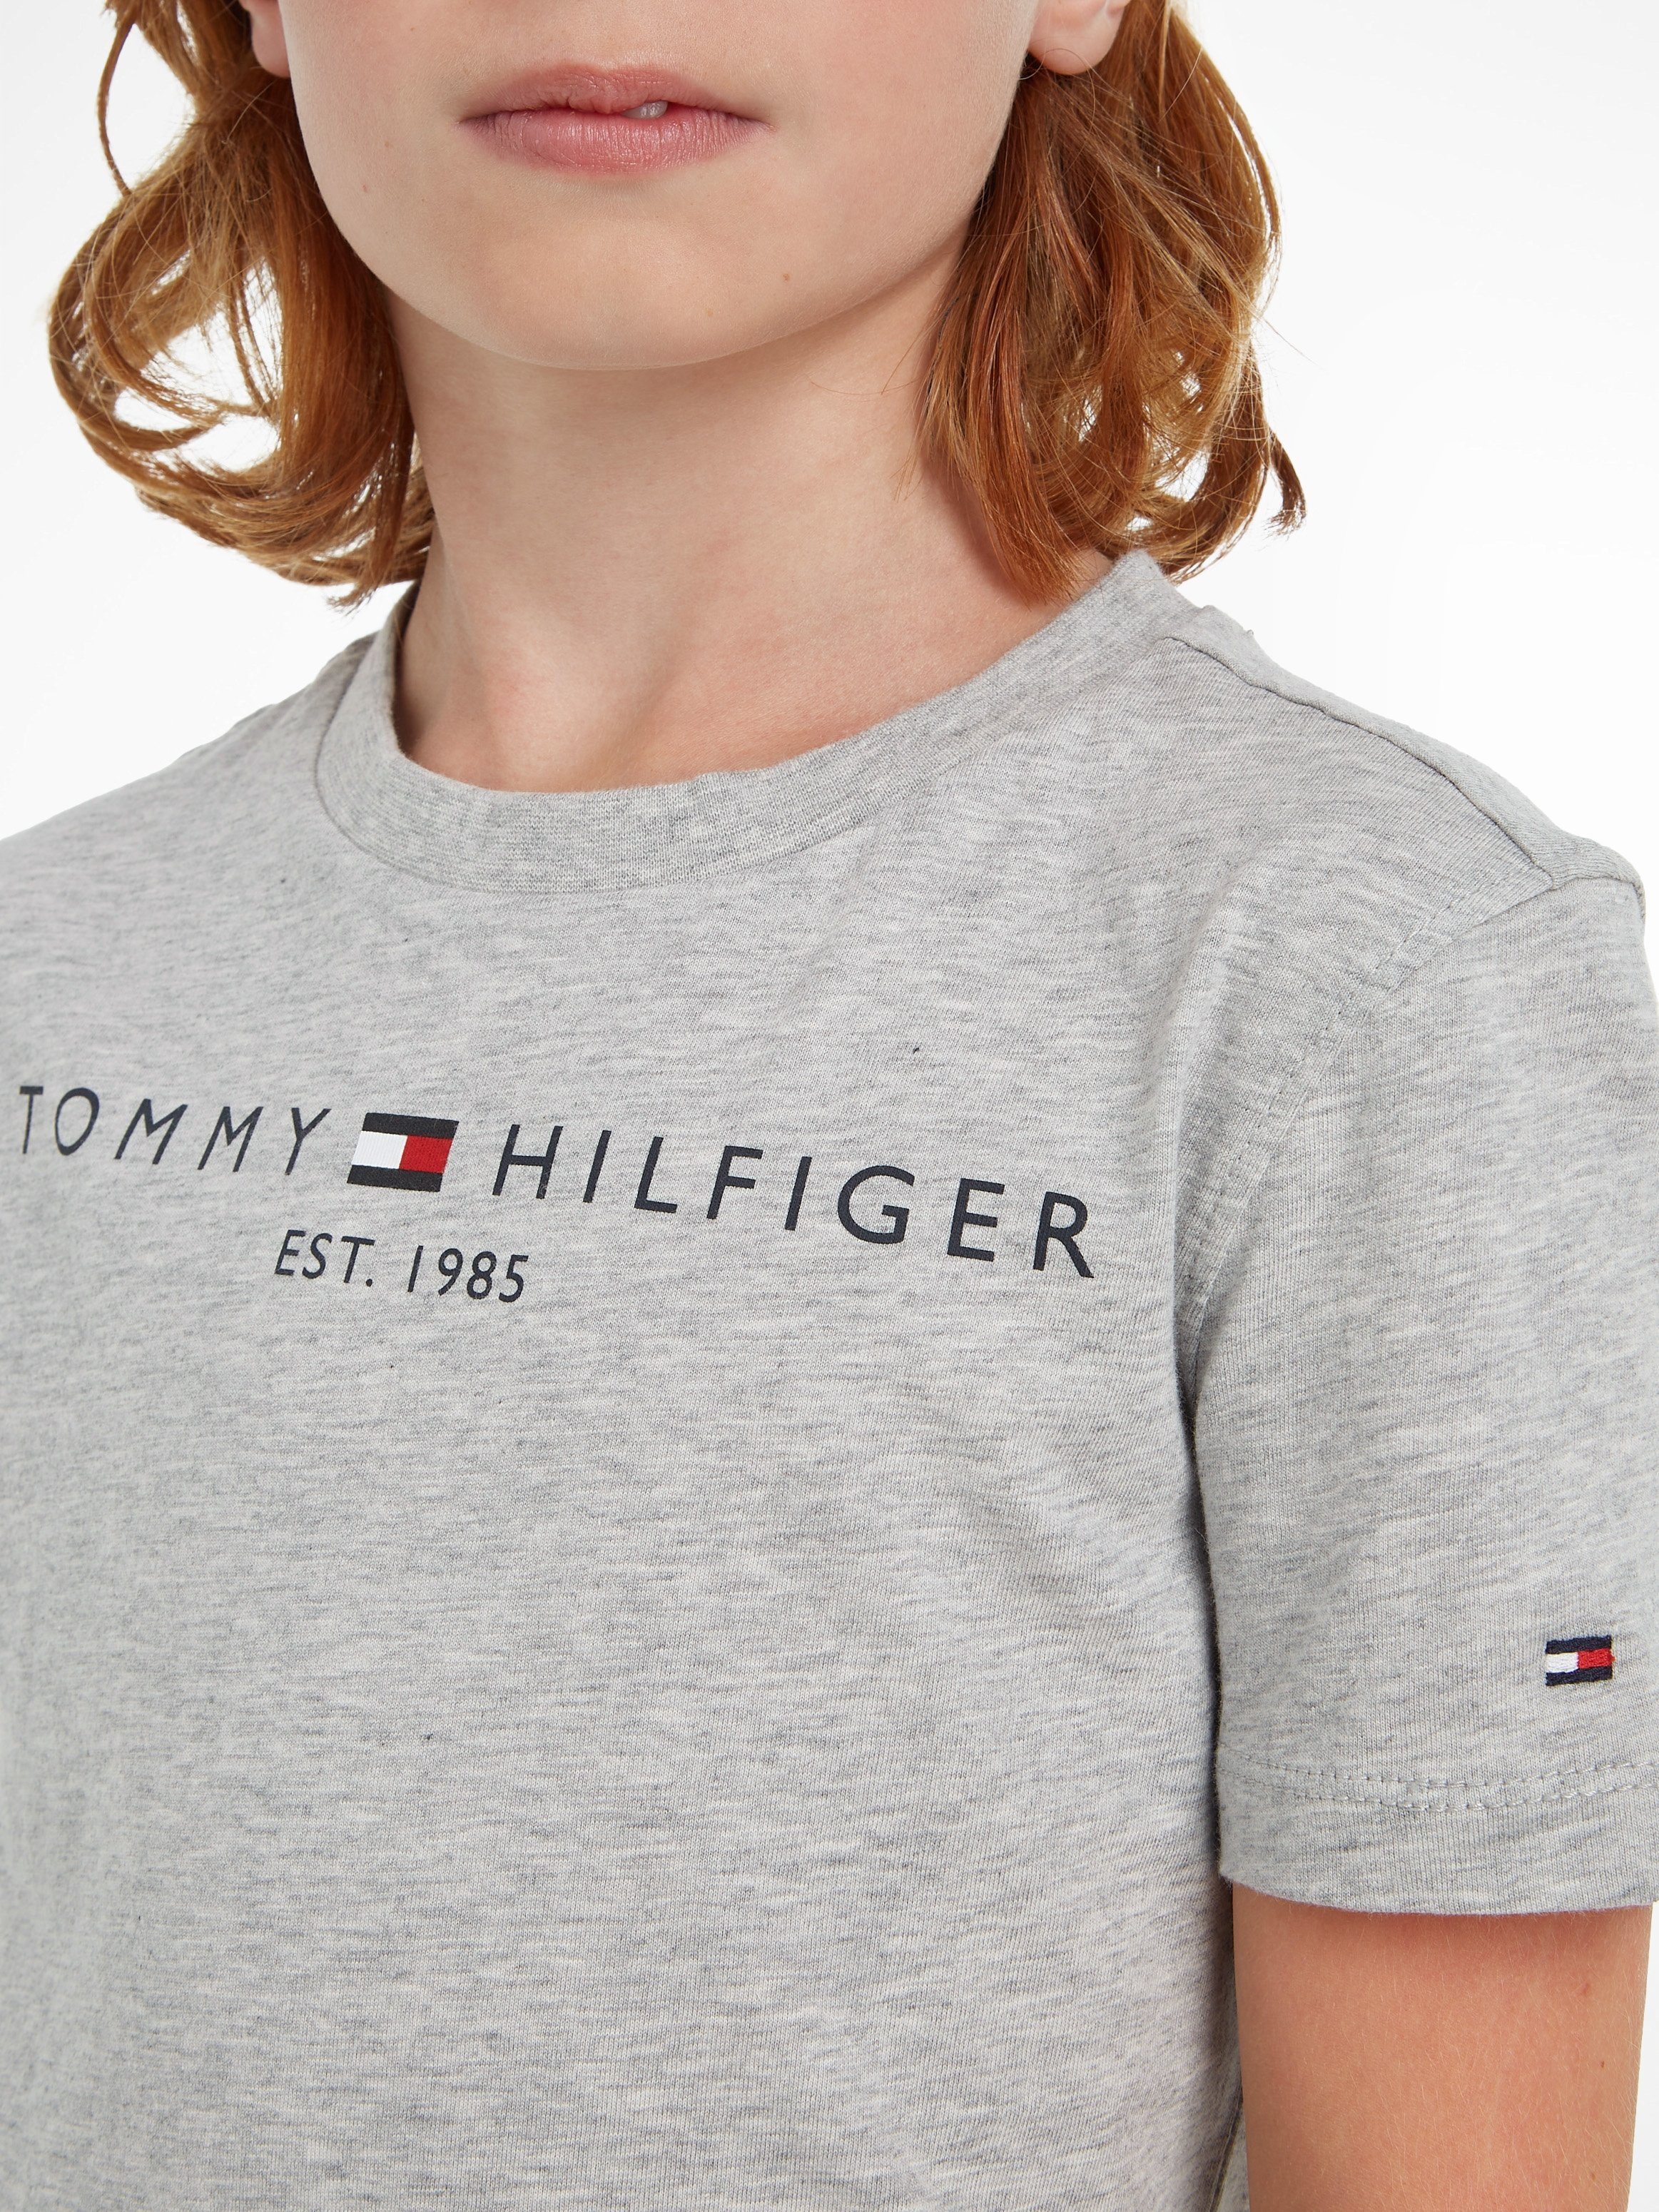 ESSENTIAL T-Shirt Jungen Tommy MiniMe,für Junior Hilfiger TEE Mädchen und Kids Kinder